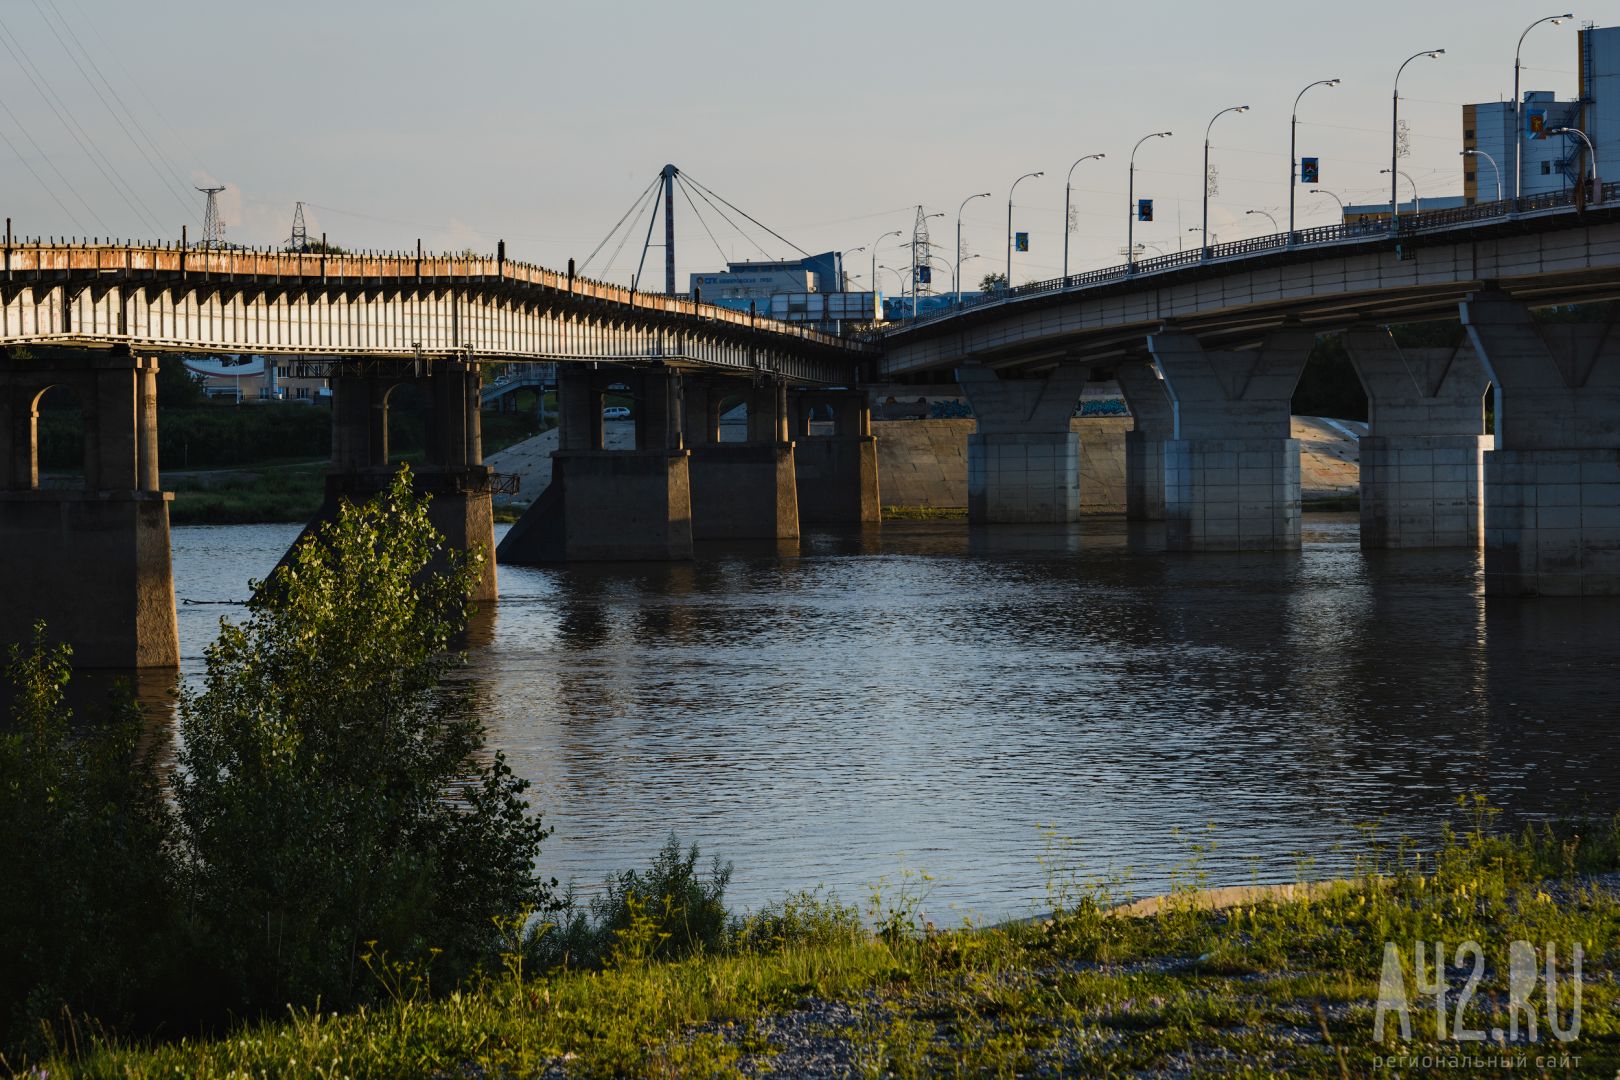 В Кемерове подросток перепрыгнул с одного моста на другой и попал на видео